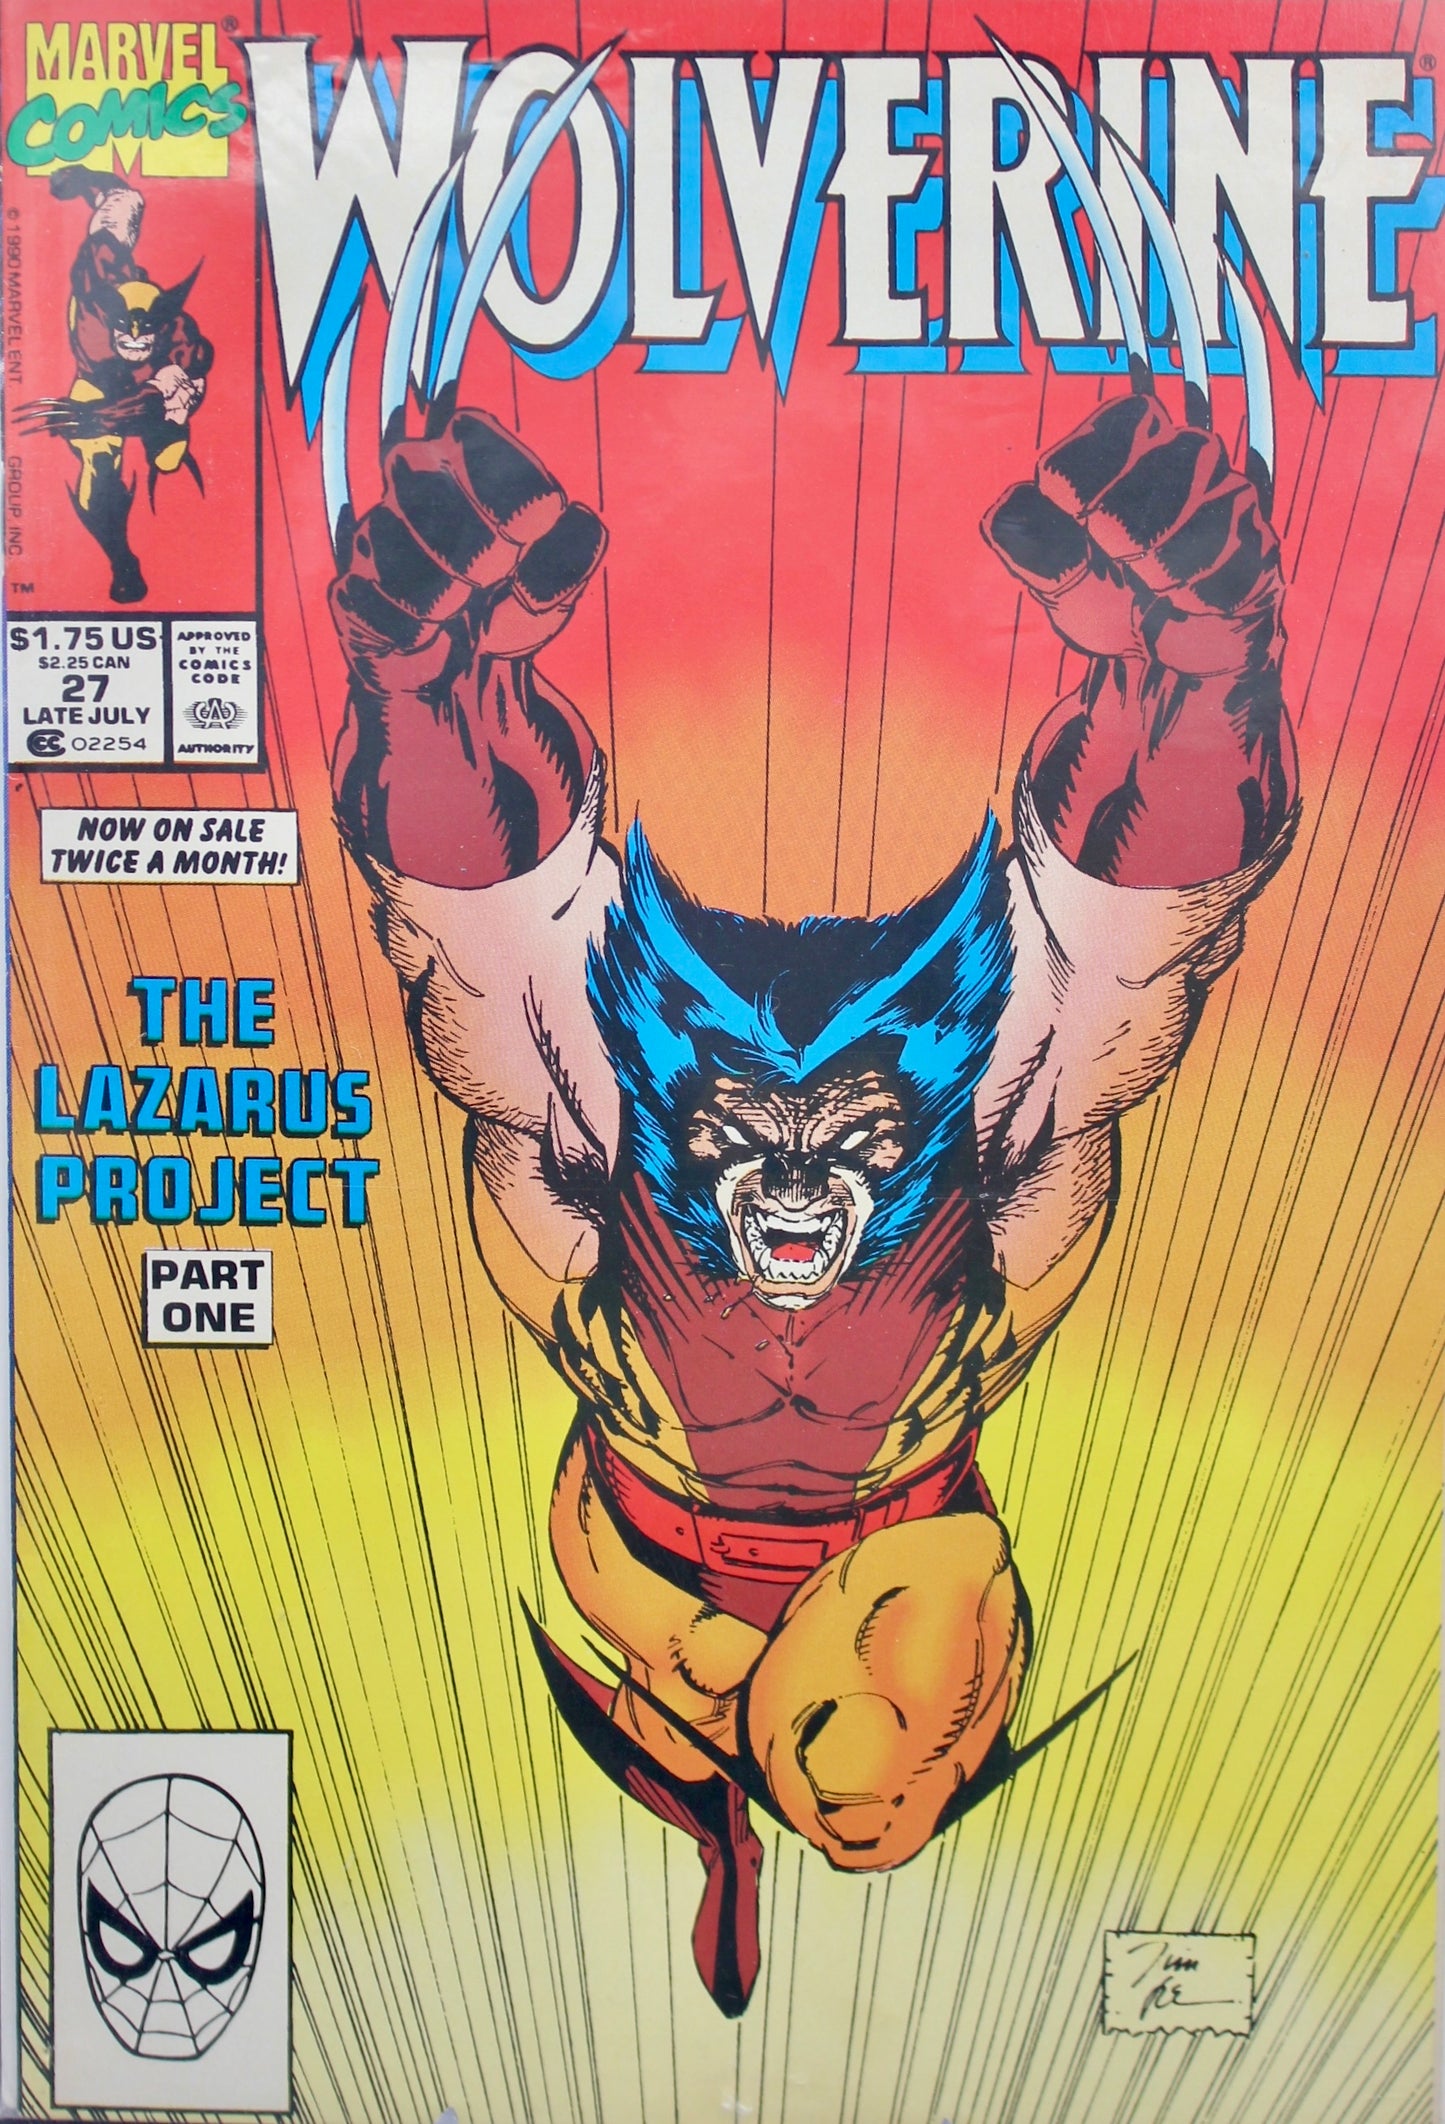 Wolverine #27